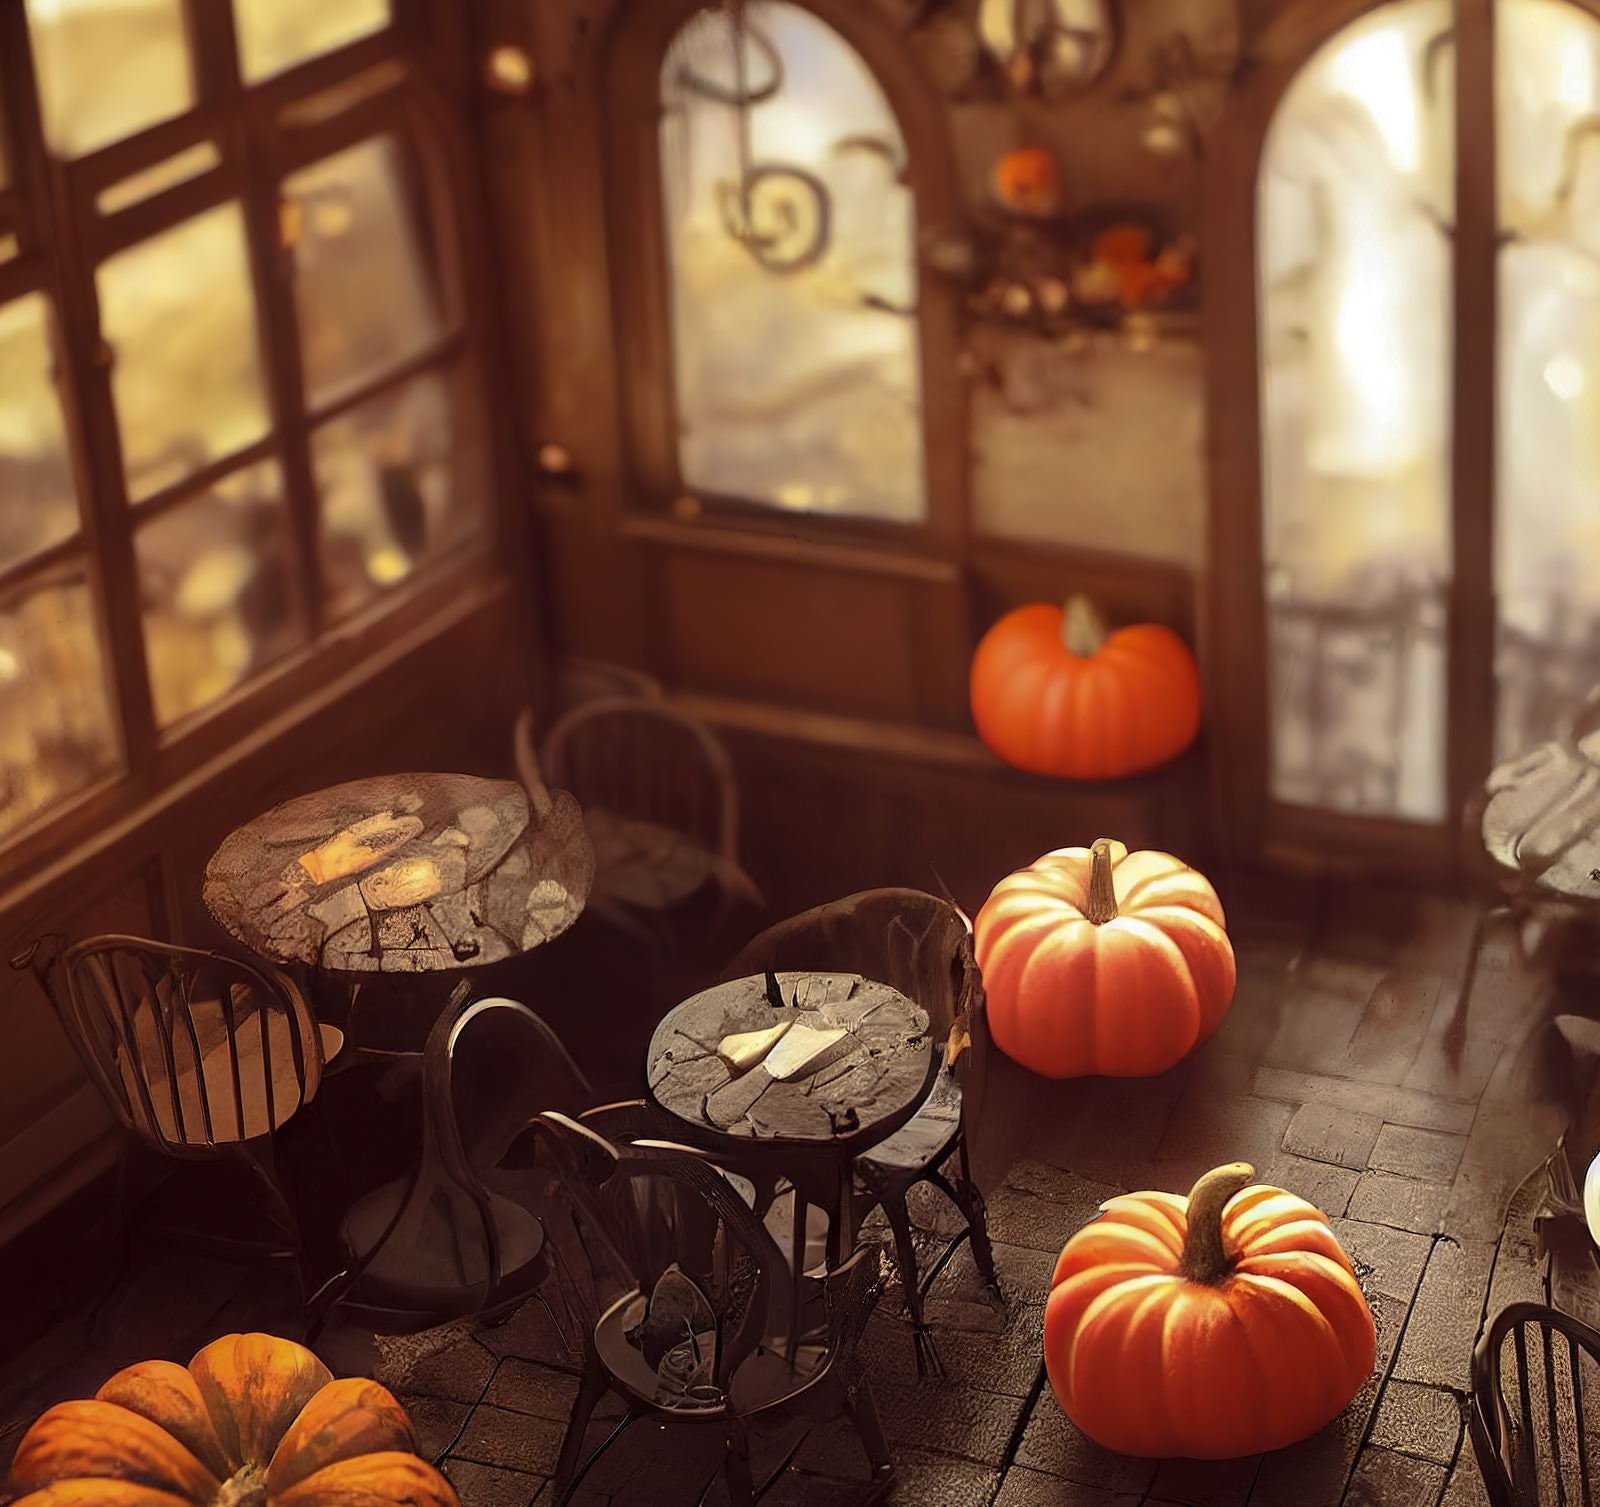 「かぼちゃが無造作に置かれた店内」の写真